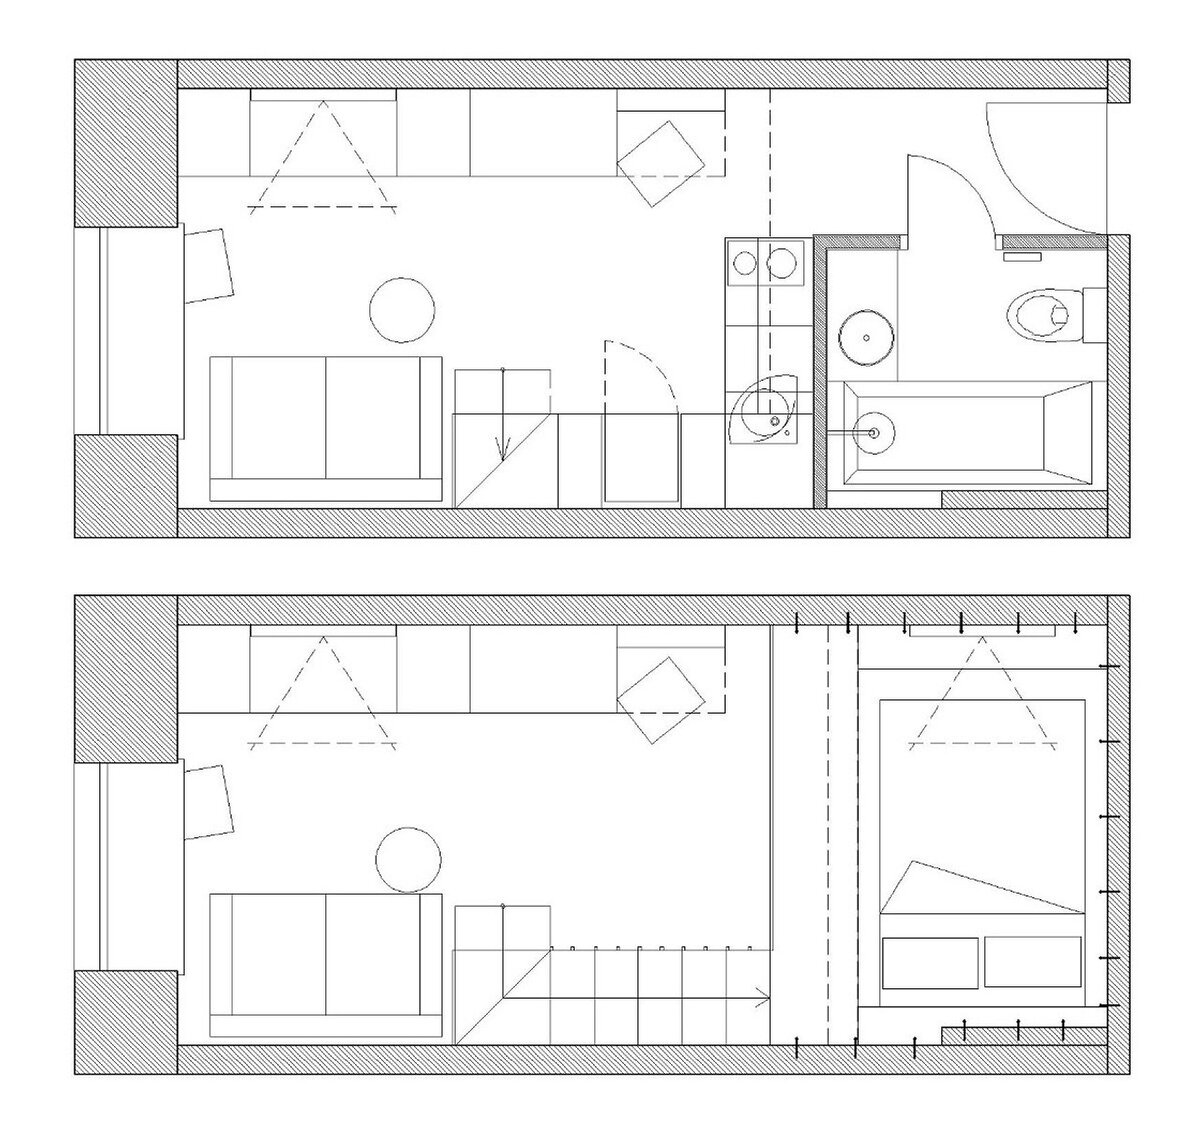 Поразительное преображение крохи на 18м² в уютную и многофункцинальную квартиру на 25м² со спальней и рабочей зоной.